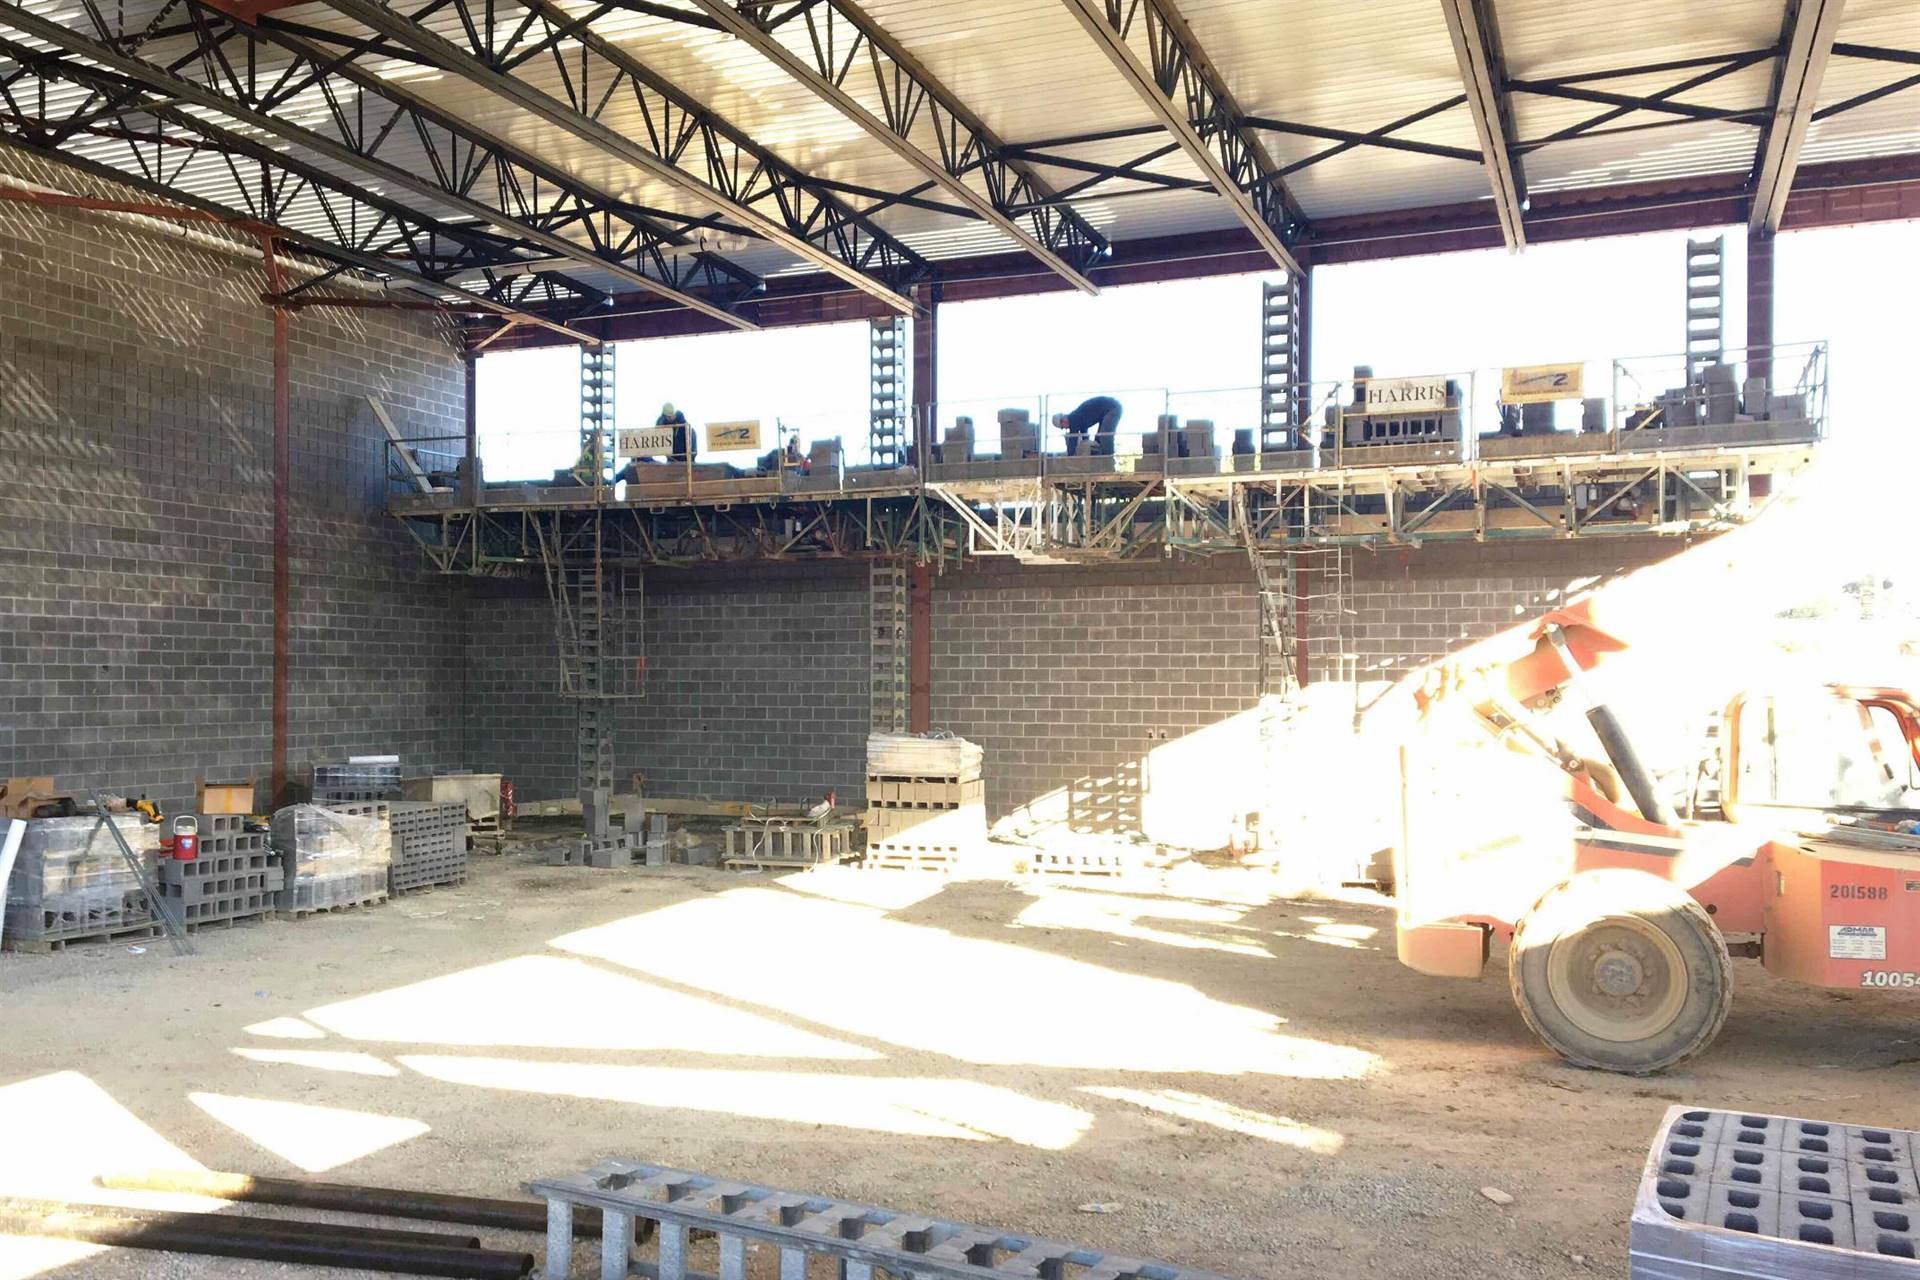 Cinder block gymnasium room with exposed steel beams